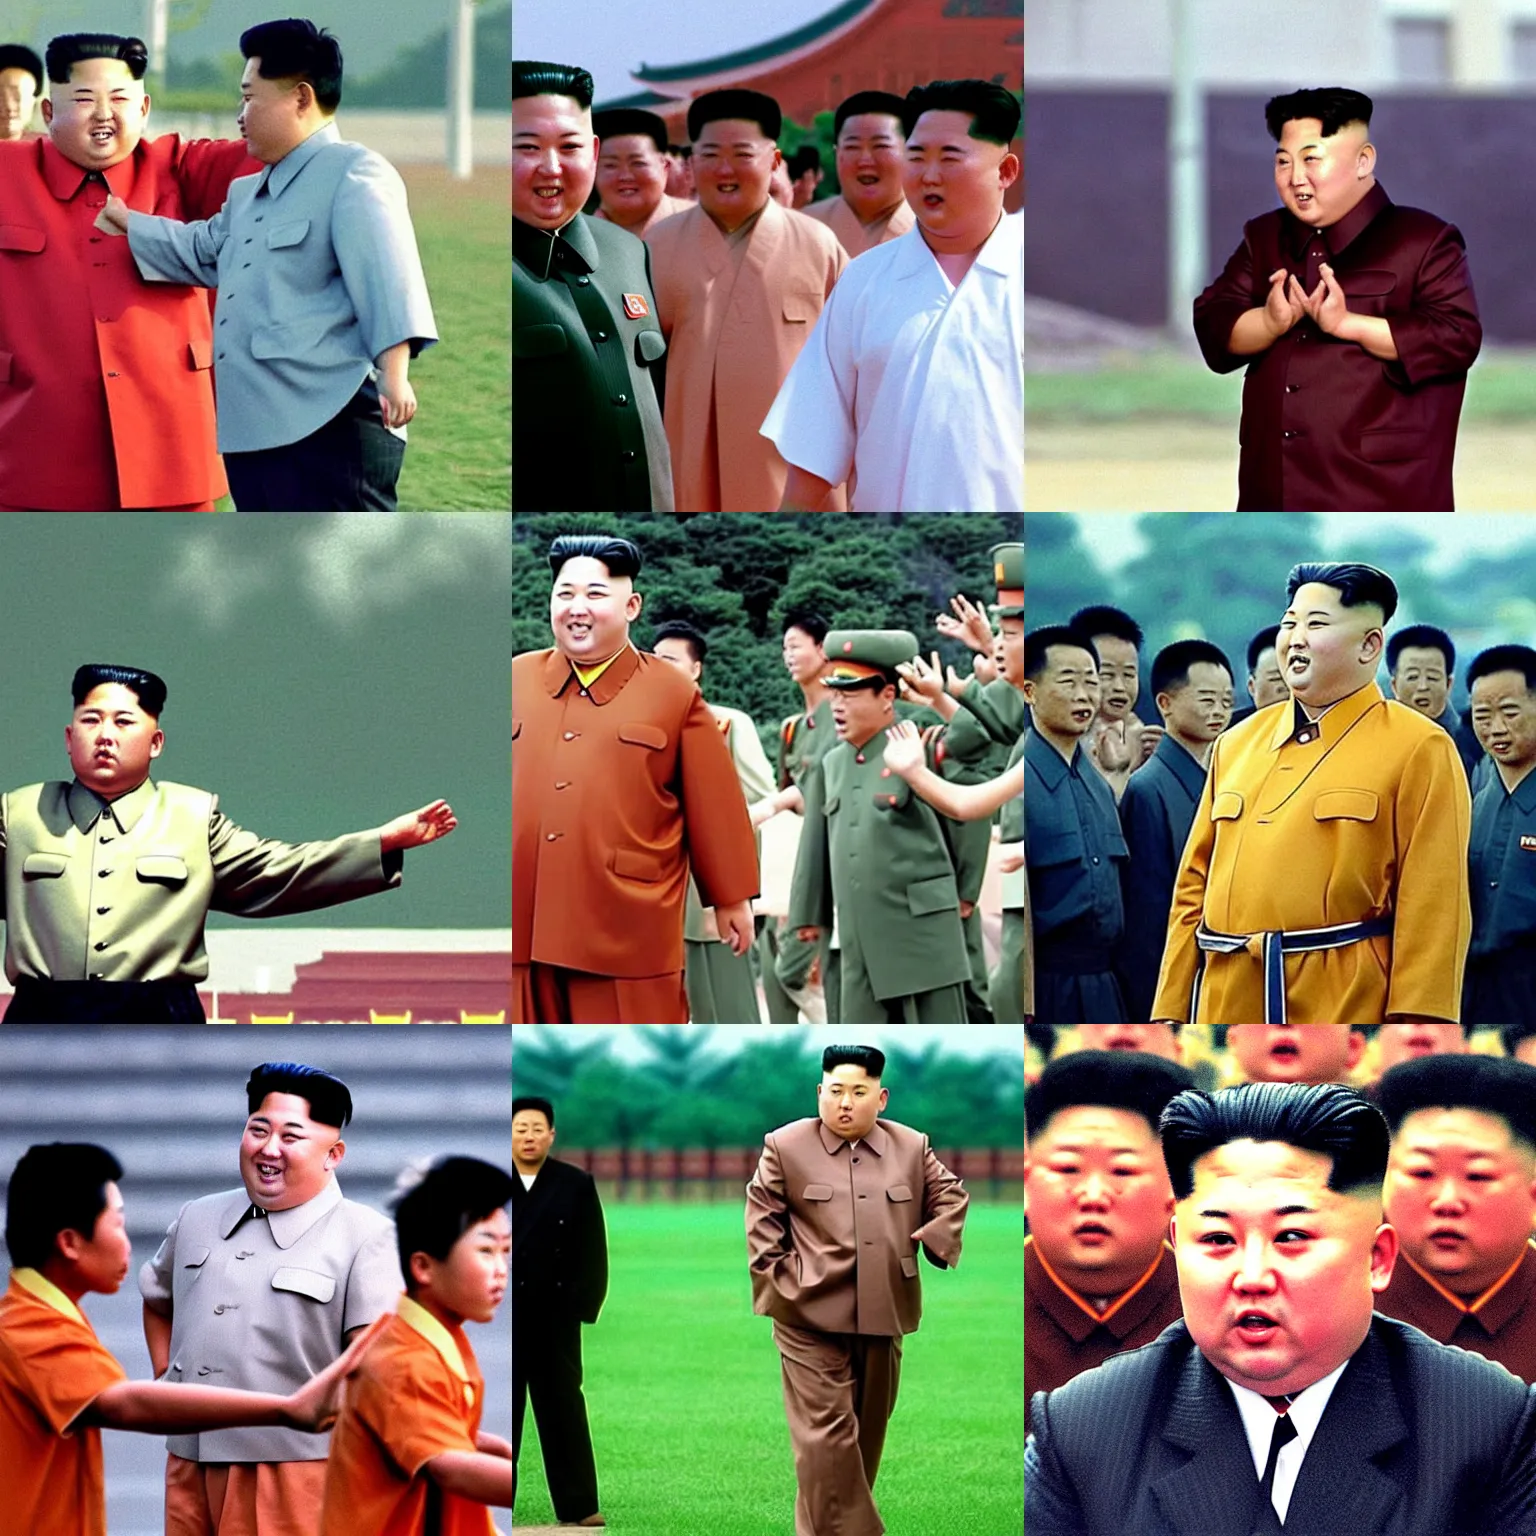 Prompt: Movie still of Kim Jong-un in Shaolin Soccer